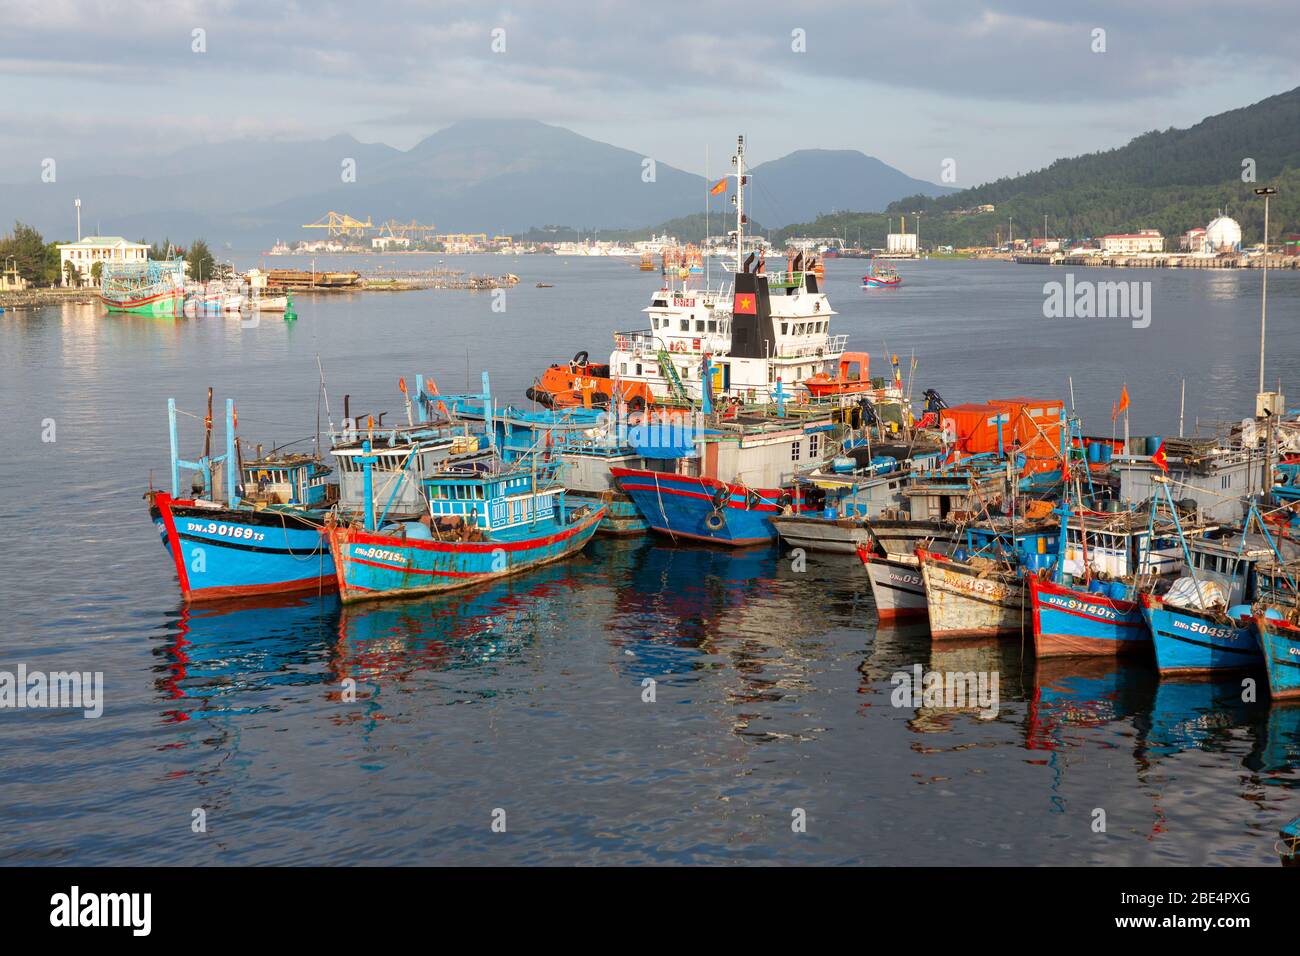 Boats in Da Nang Harbor, Vietnam Stock Photo